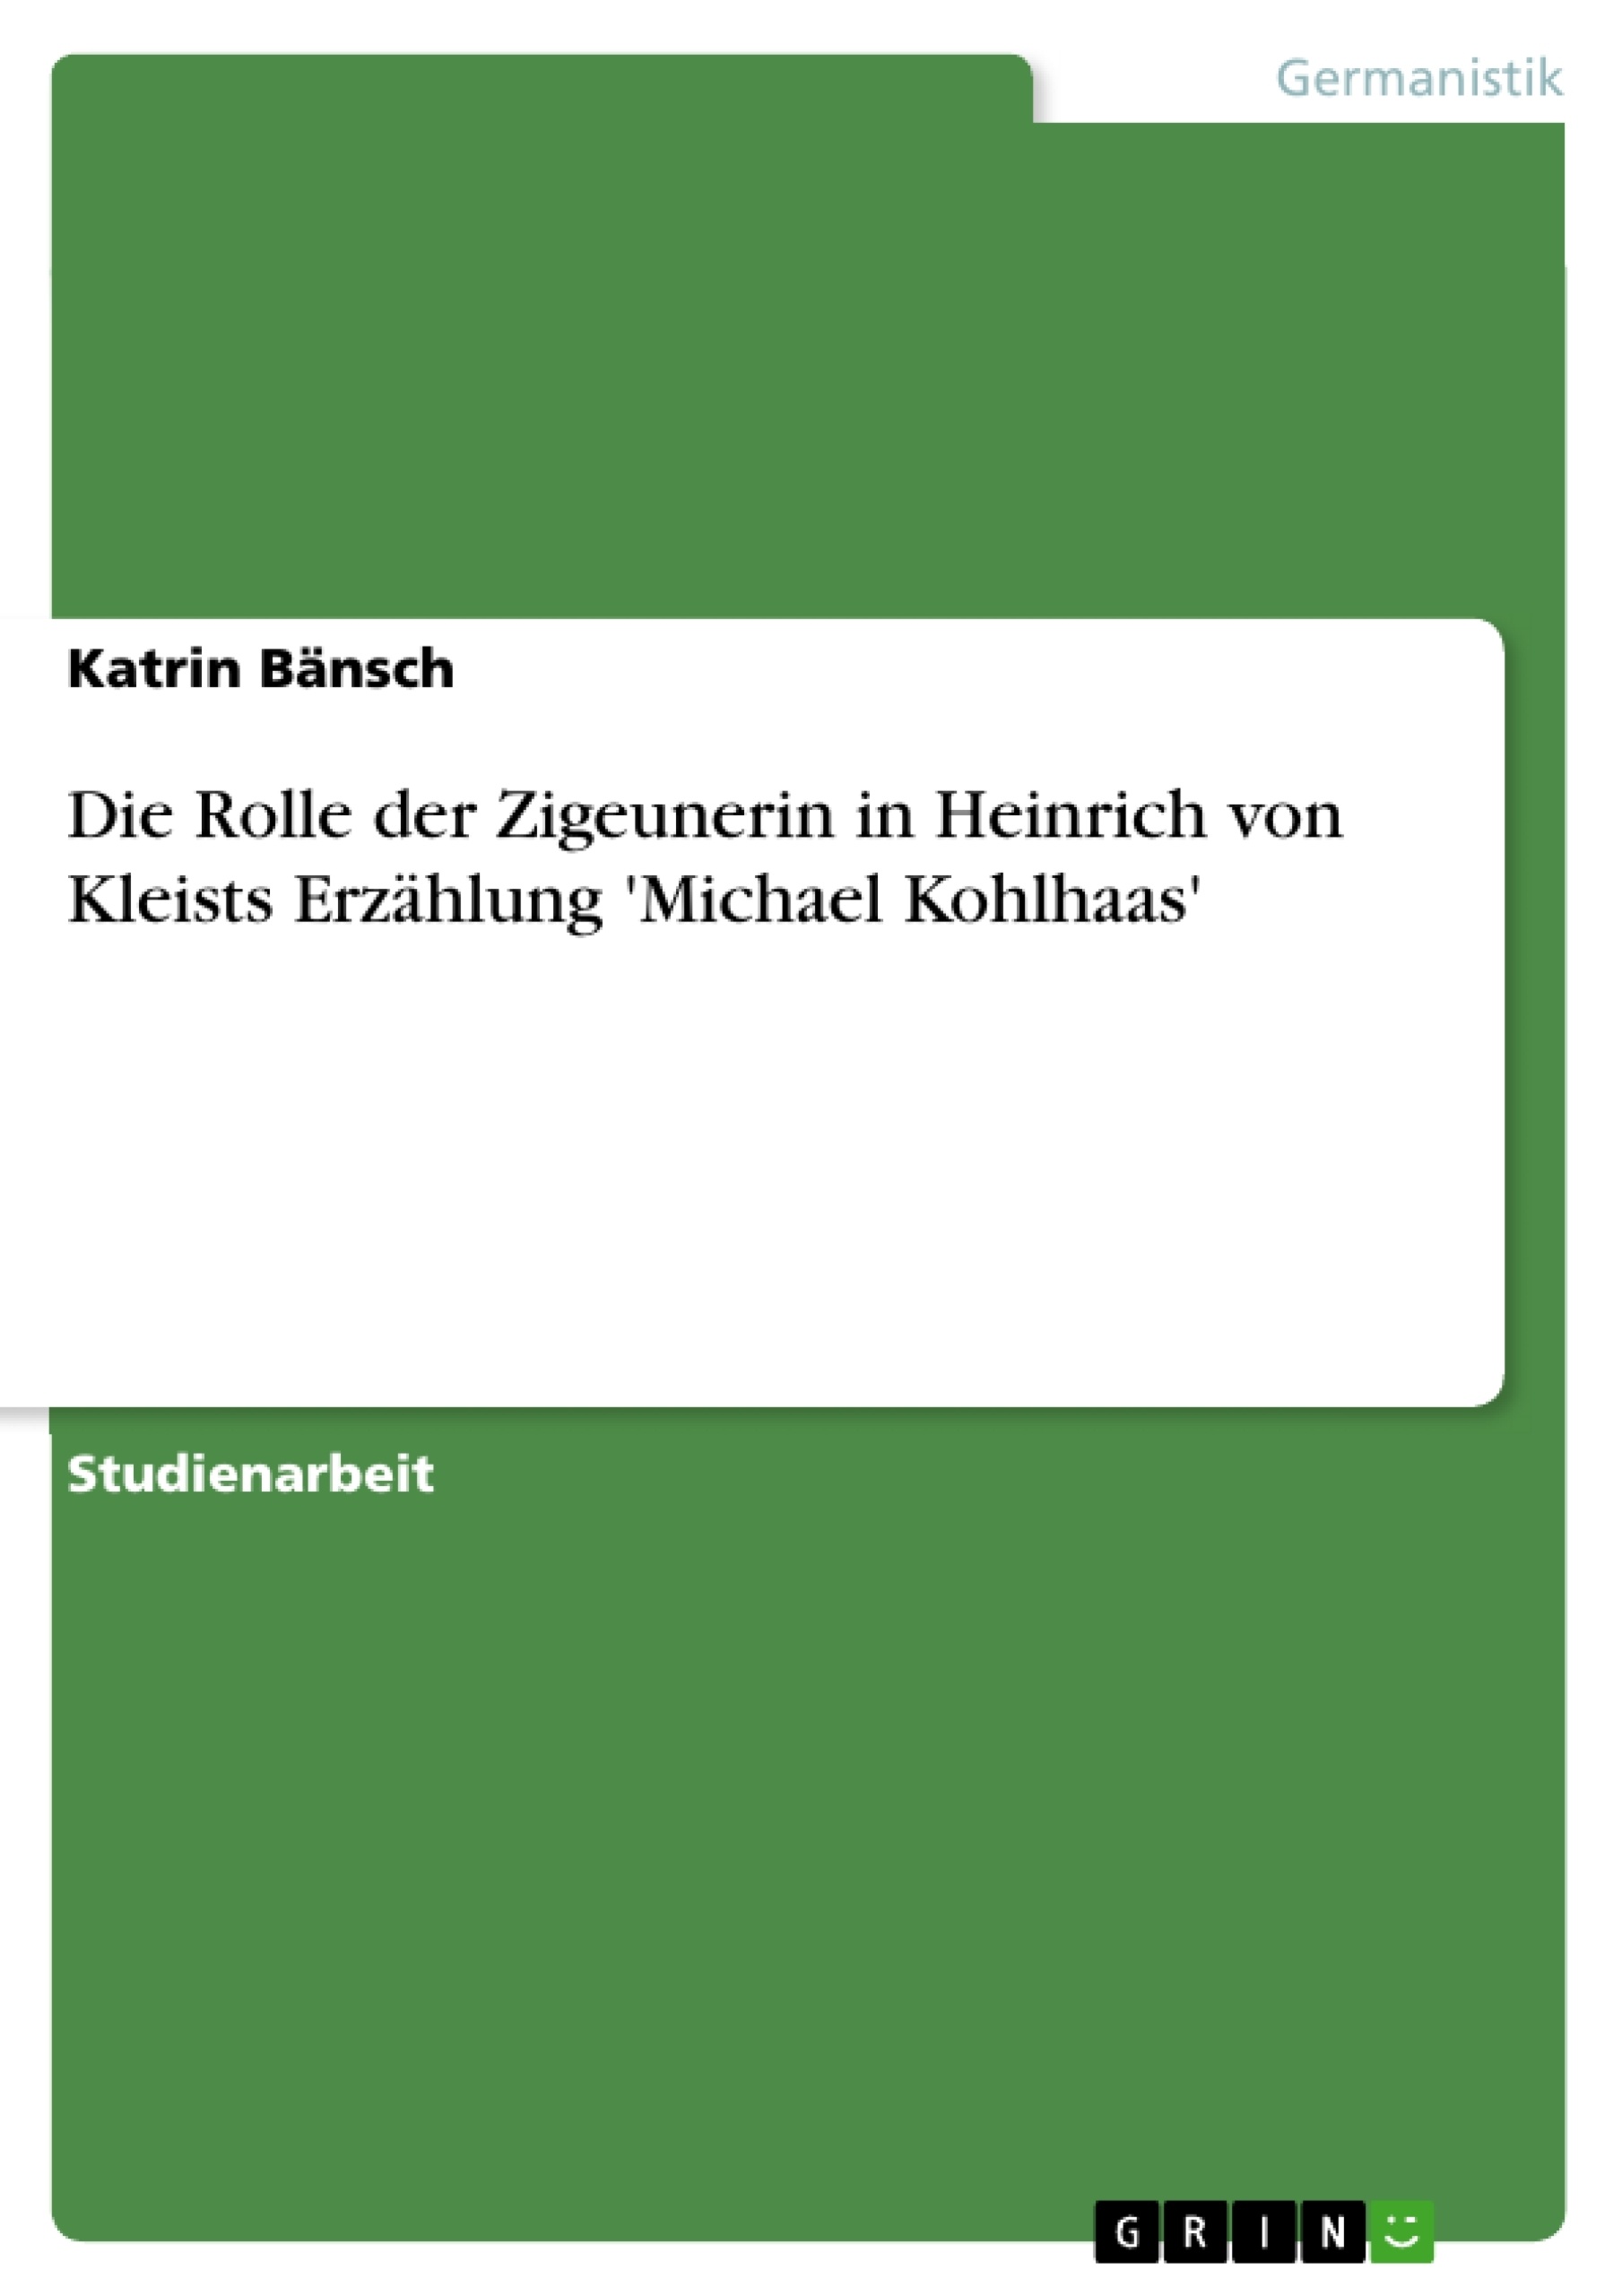 Título: Die Rolle der Zigeunerin in Heinrich von Kleists Erzählung 'Michael Kohlhaas'